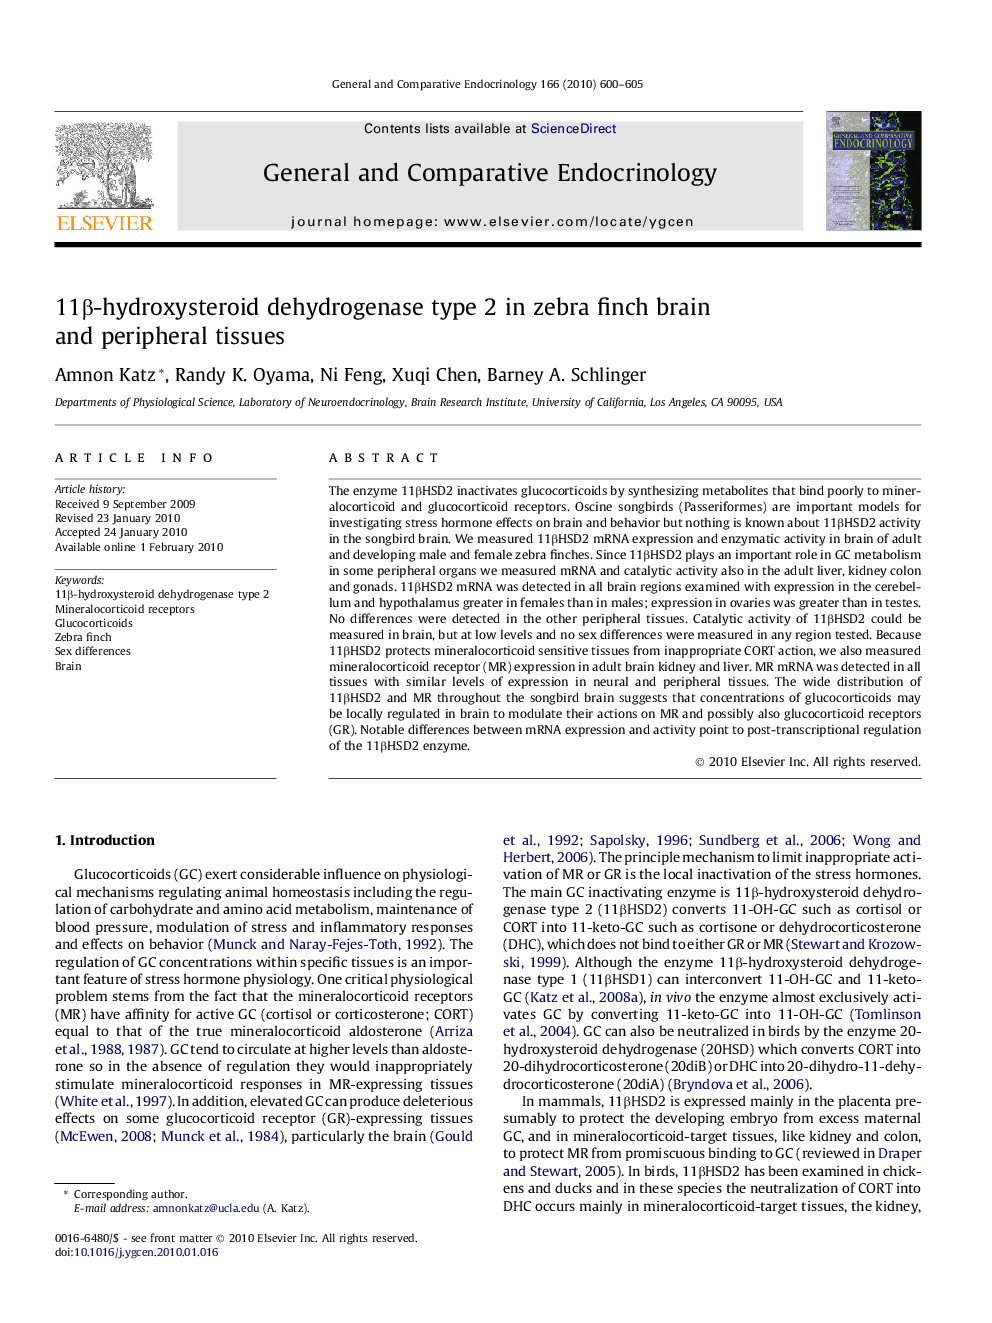 11β-hydroxysteroid dehydrogenase type 2 in zebra finch brain and peripheral tissues